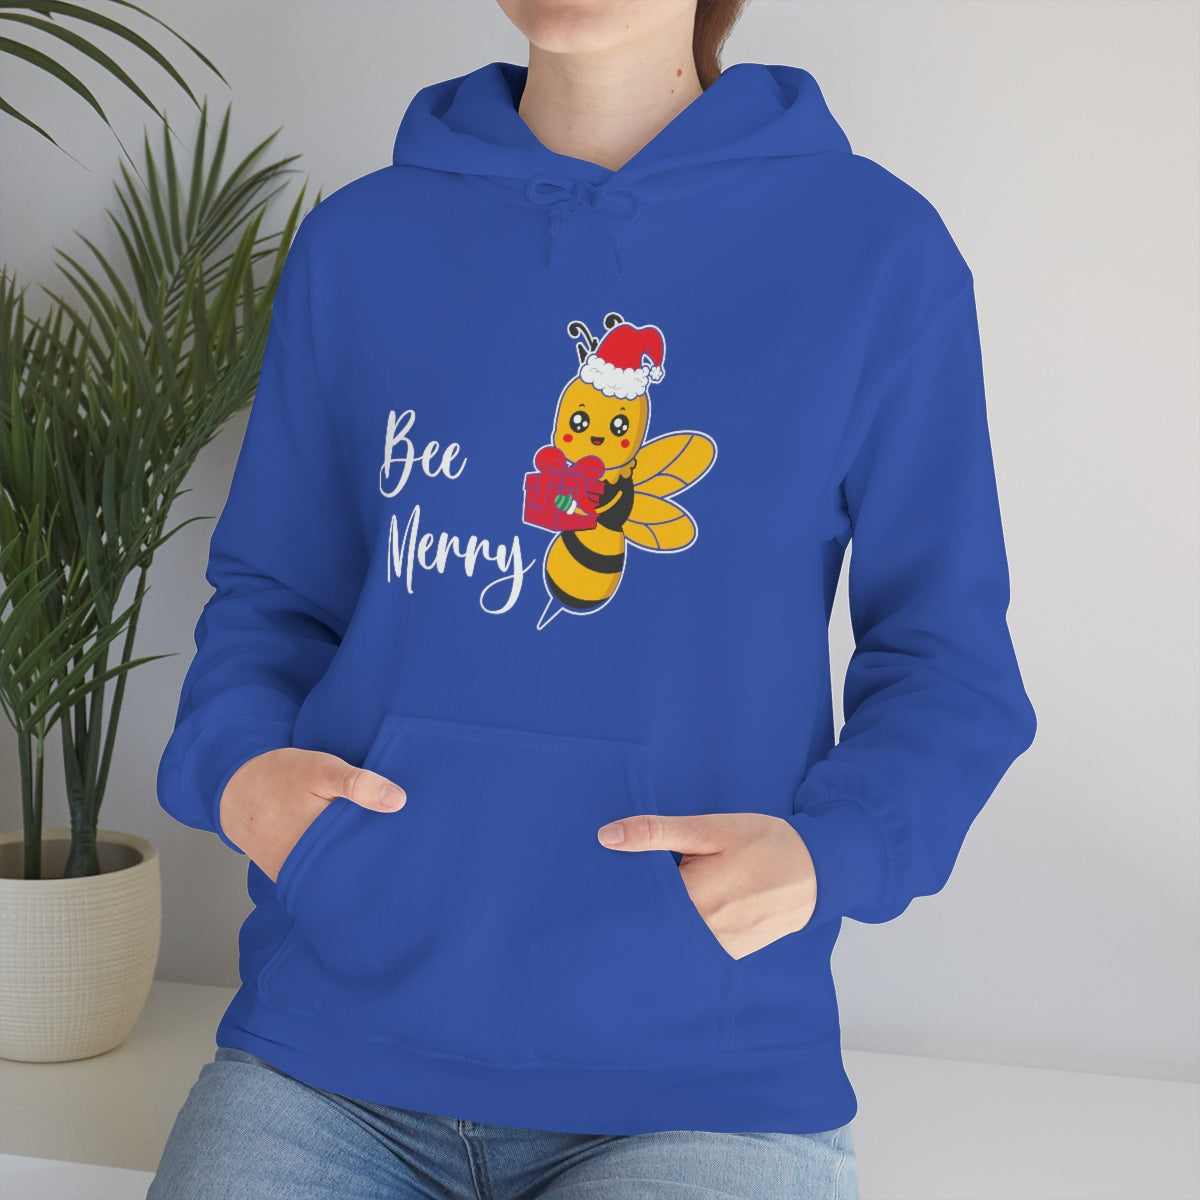 Merry Christmas Hoodie Unisex Custom Hoodie , Hooded Sweatshirt , Be Merry Printify